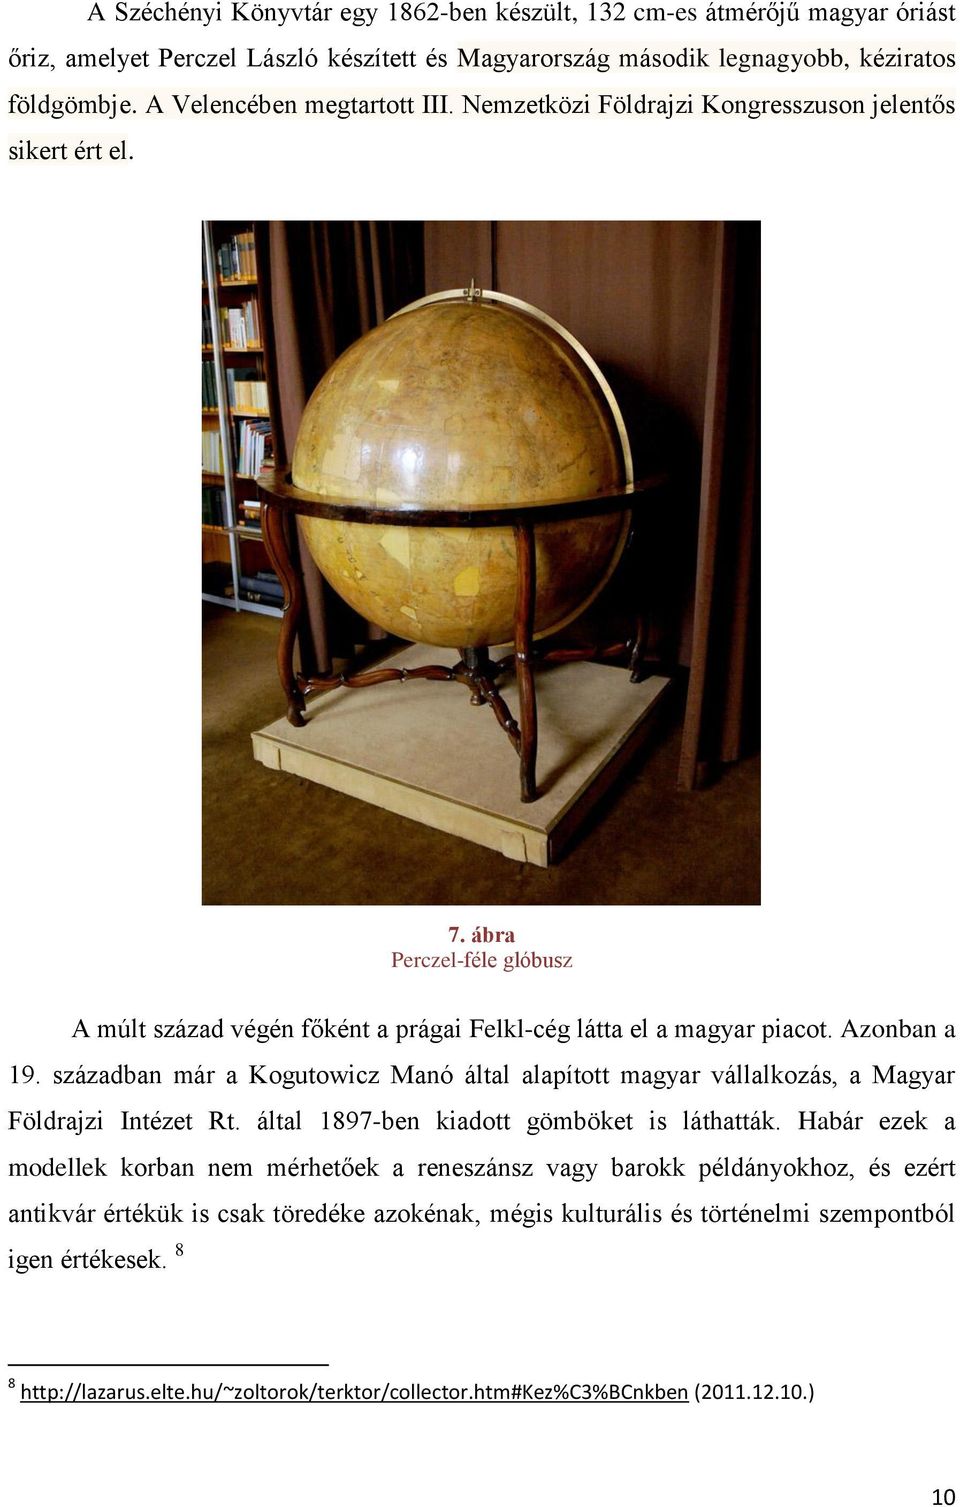 Azonban a 19. században már a Kogutowicz Manó által alapított magyar vállalkozás, a Magyar Földrajzi Intézet Rt. által 1897-ben kiadott gömböket is láthatták.